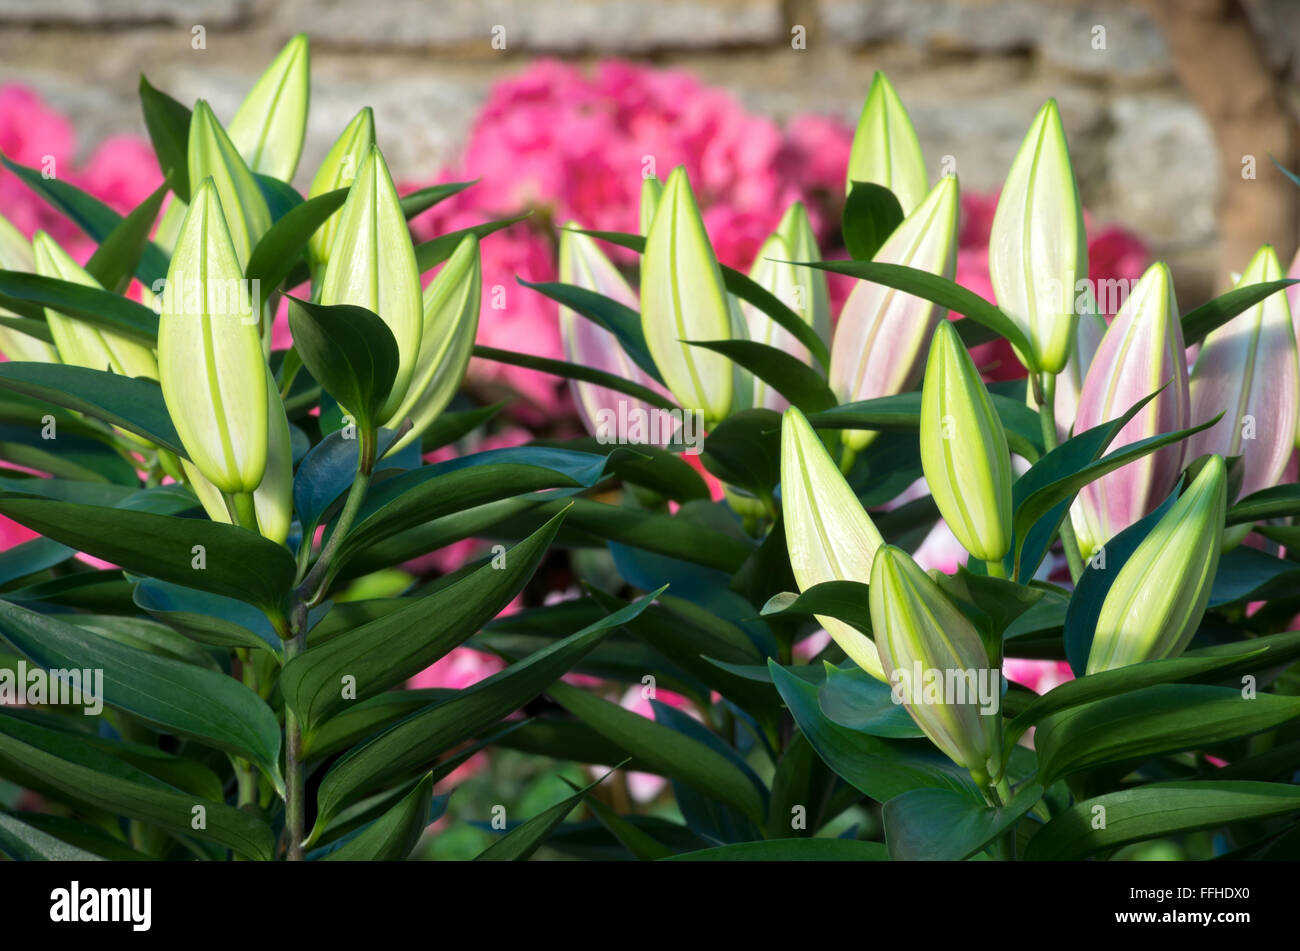 Lys oriental ou lilium aurata plantes avec reservoir fermé avant la floraison Banque D'Images